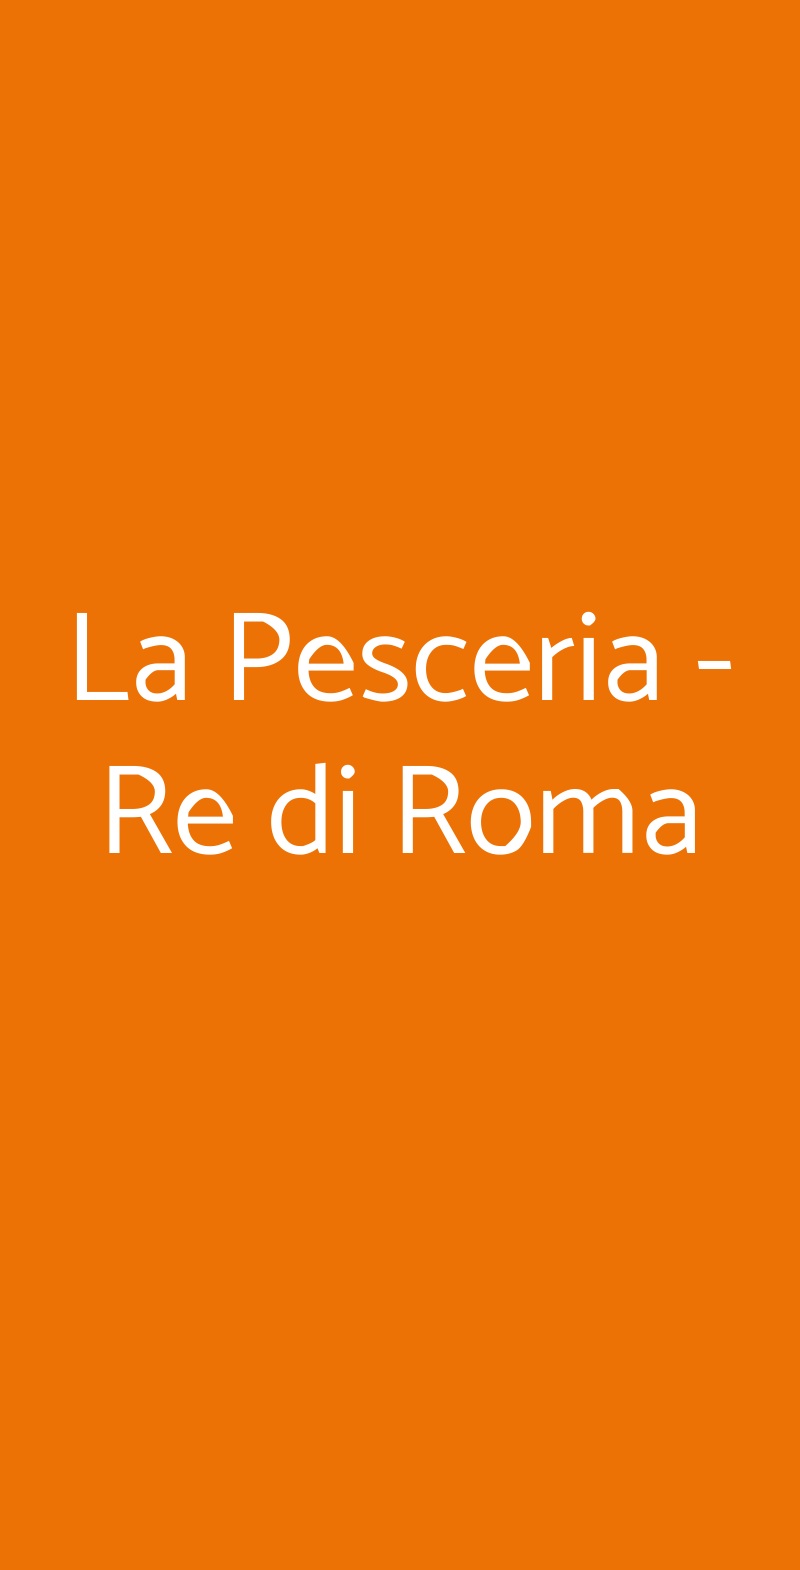 La Pesceria - Re di Roma Roma menù 1 pagina